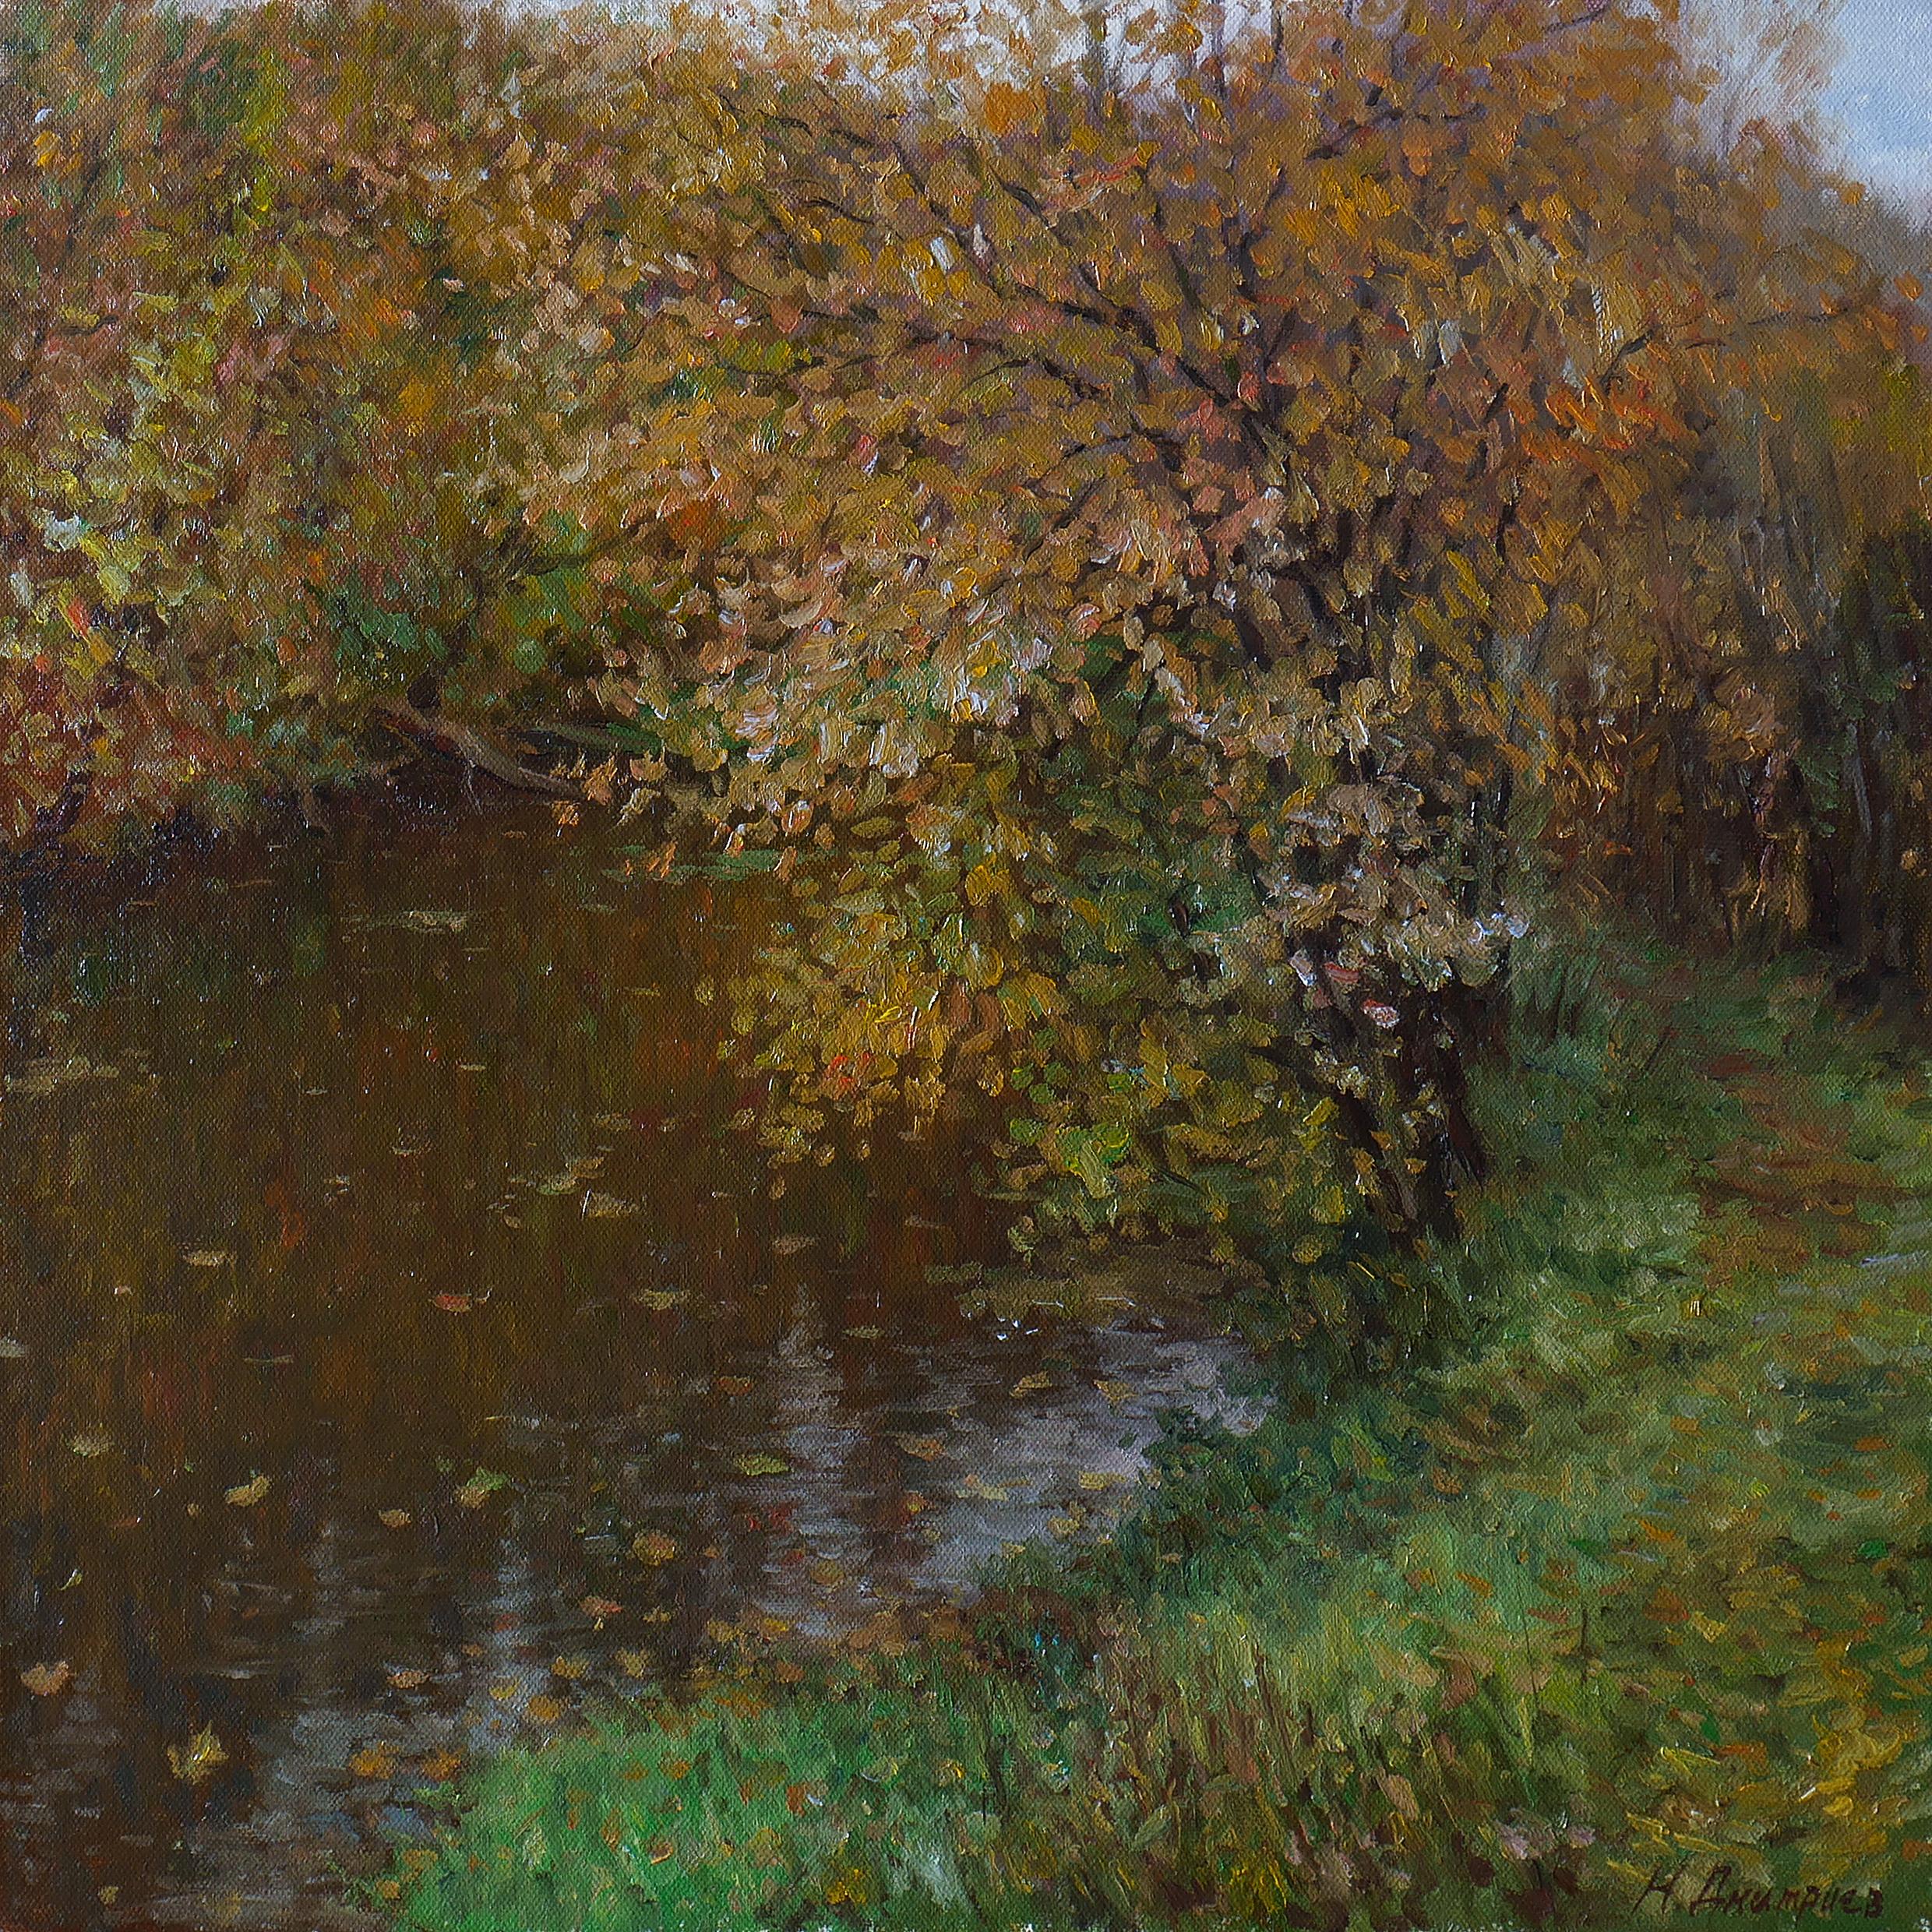 Landscape Painting Nikolay Dmitriev - Silence of Autumn - peinture de paysage d'automne